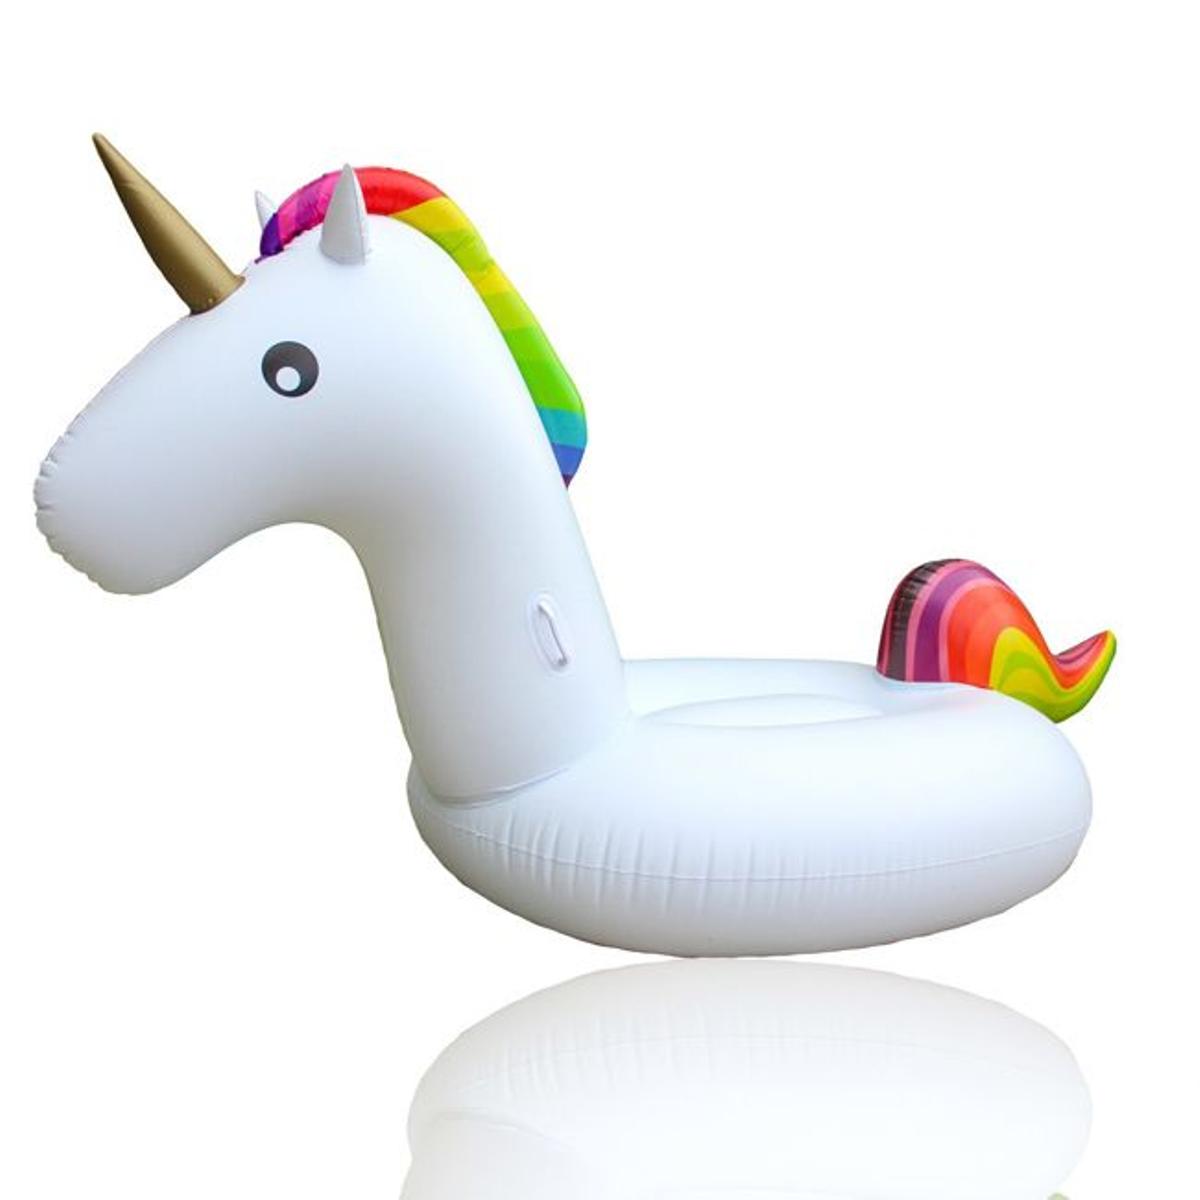 Flotador de unicornio, el más vendido